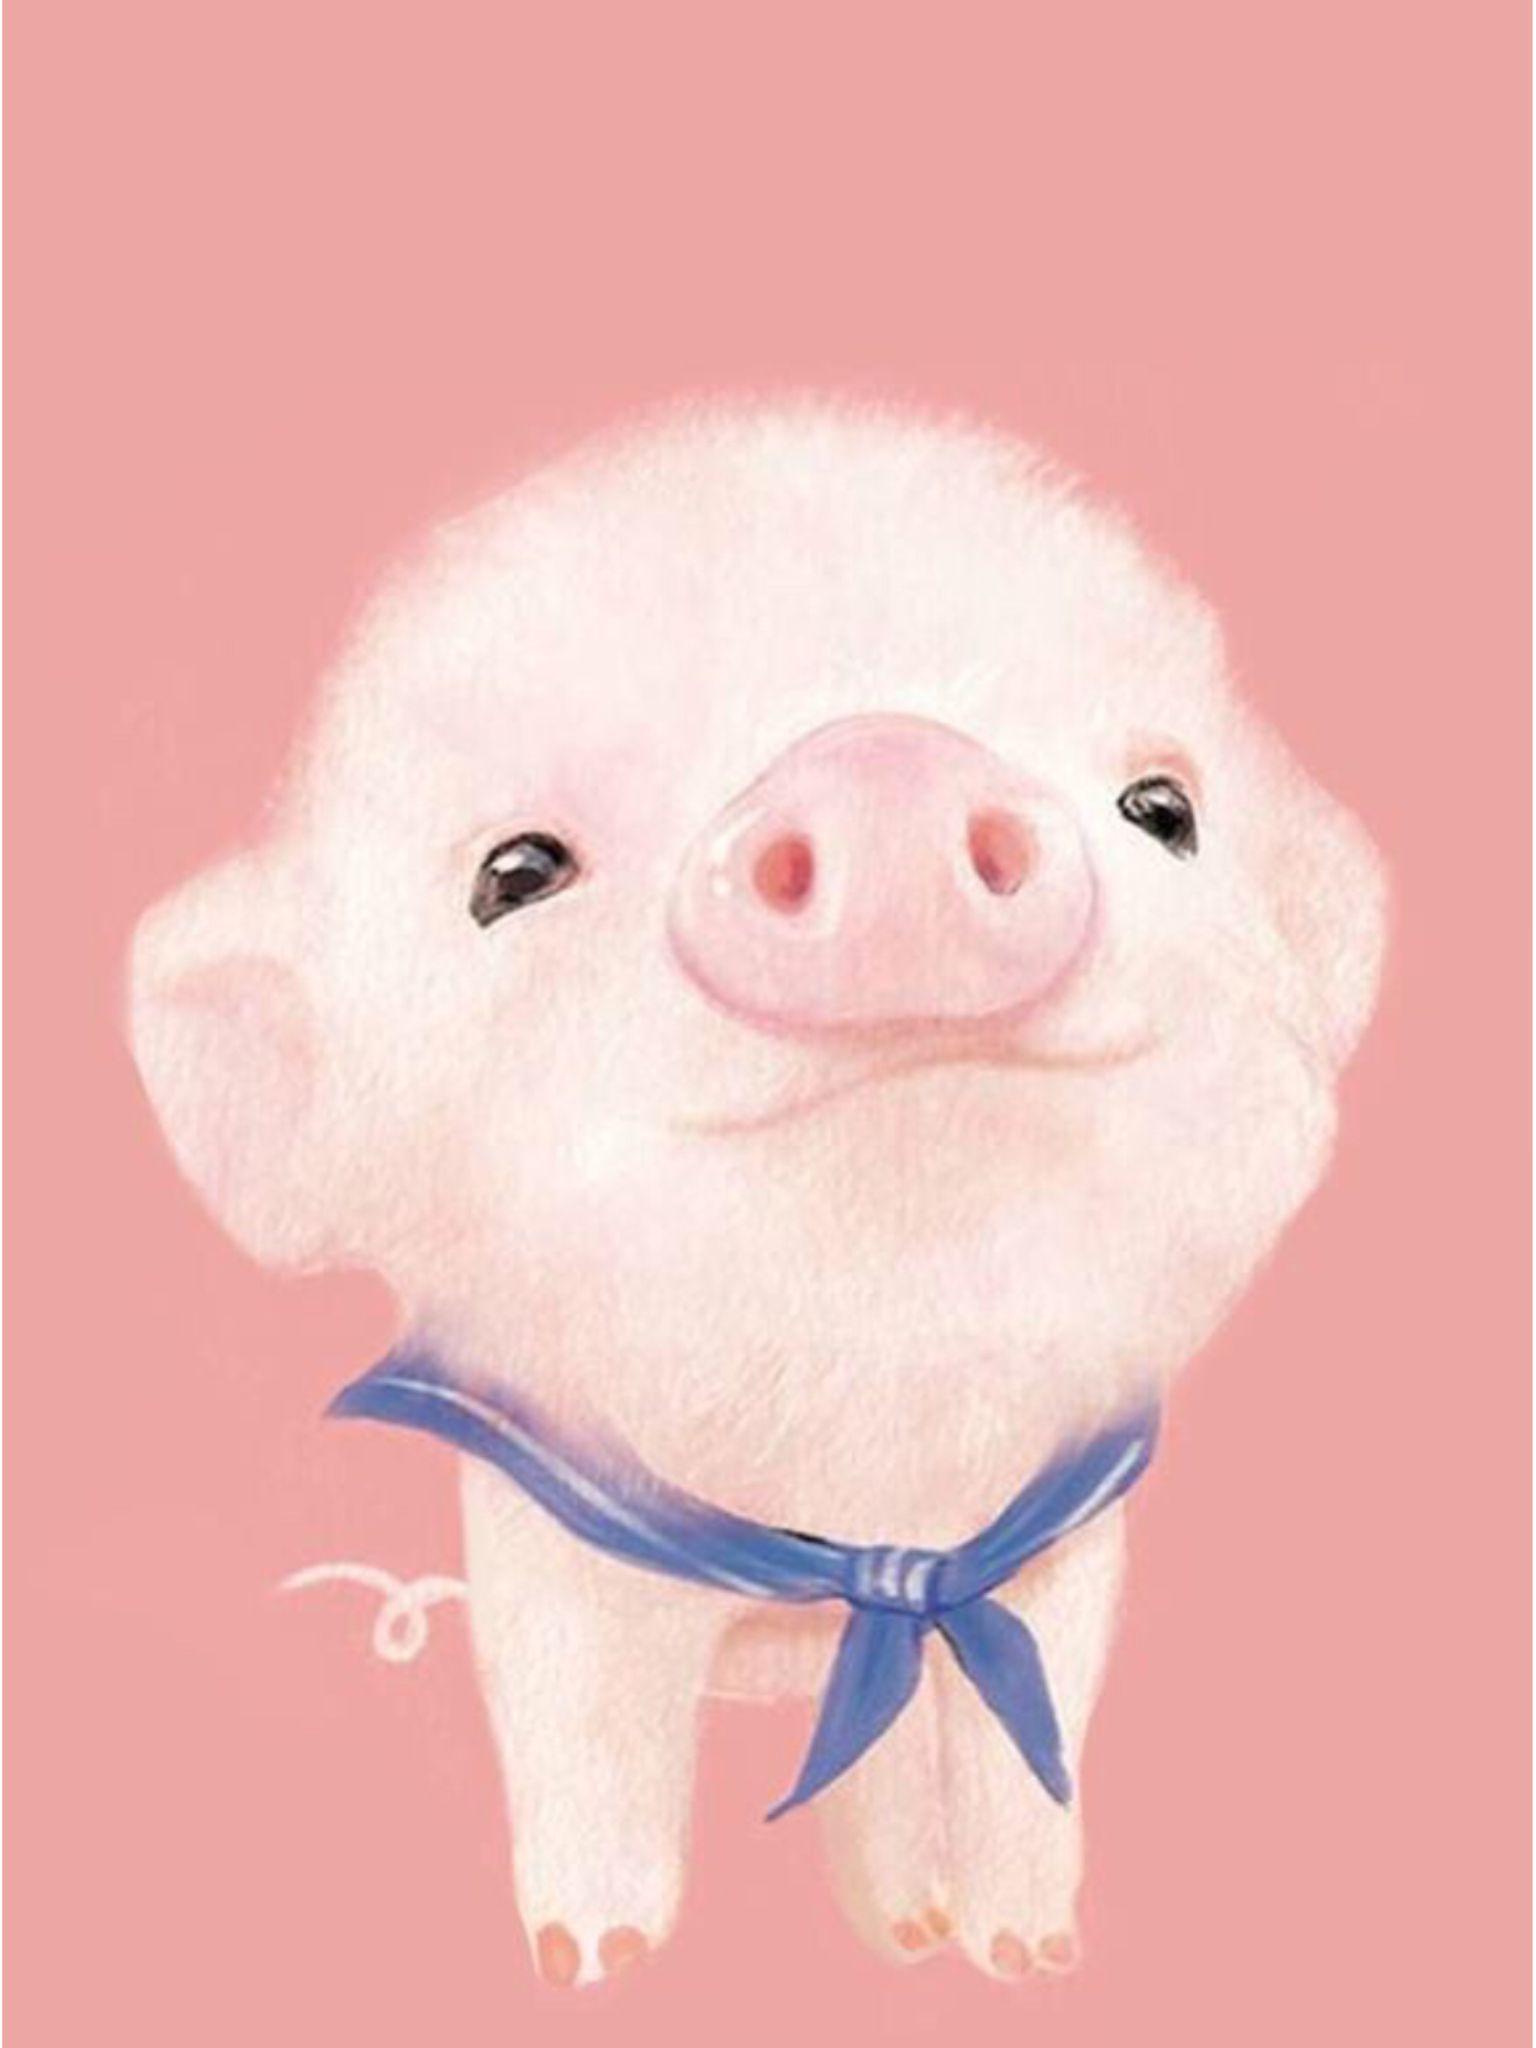 Cute pig wallpaper. Иллюстрации свиньи, Рисунки животных, Милые